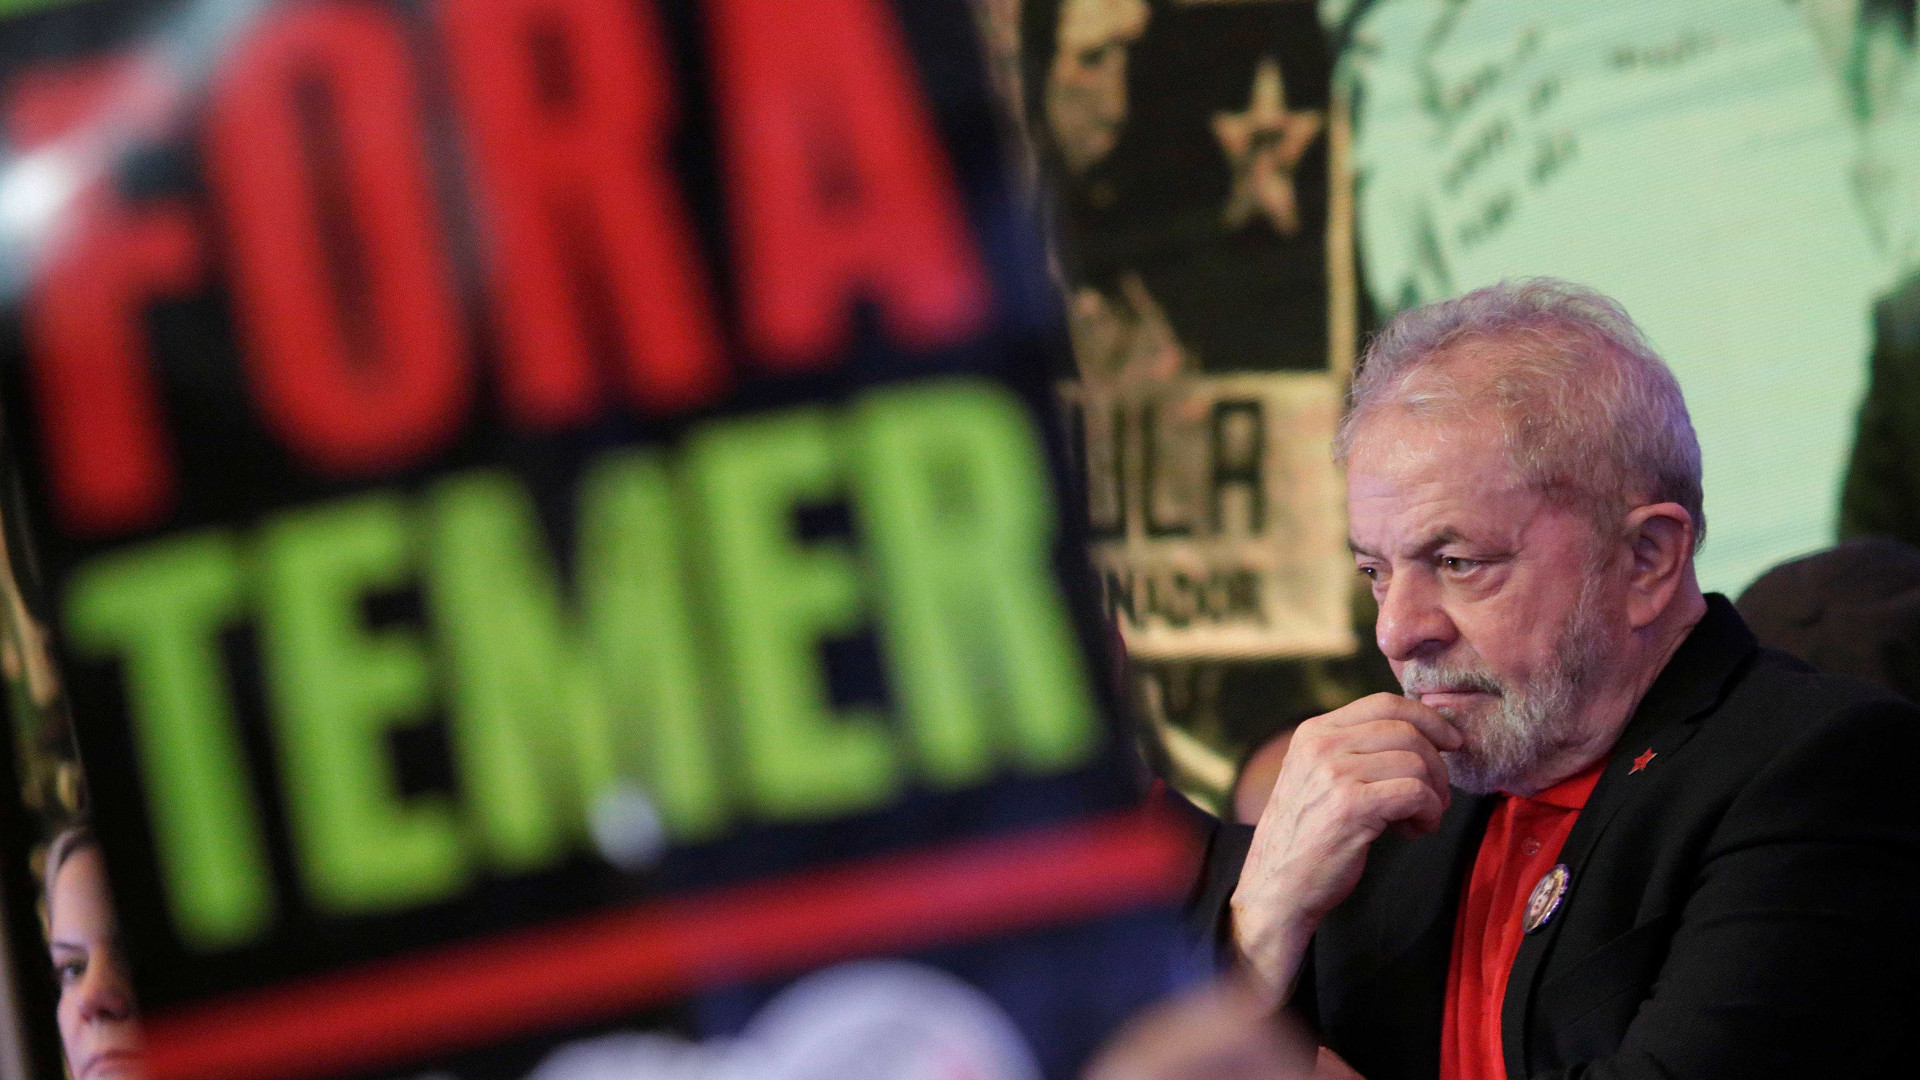 Governo golpista vai ser derrubado no voto, diz Lula no Nordeste